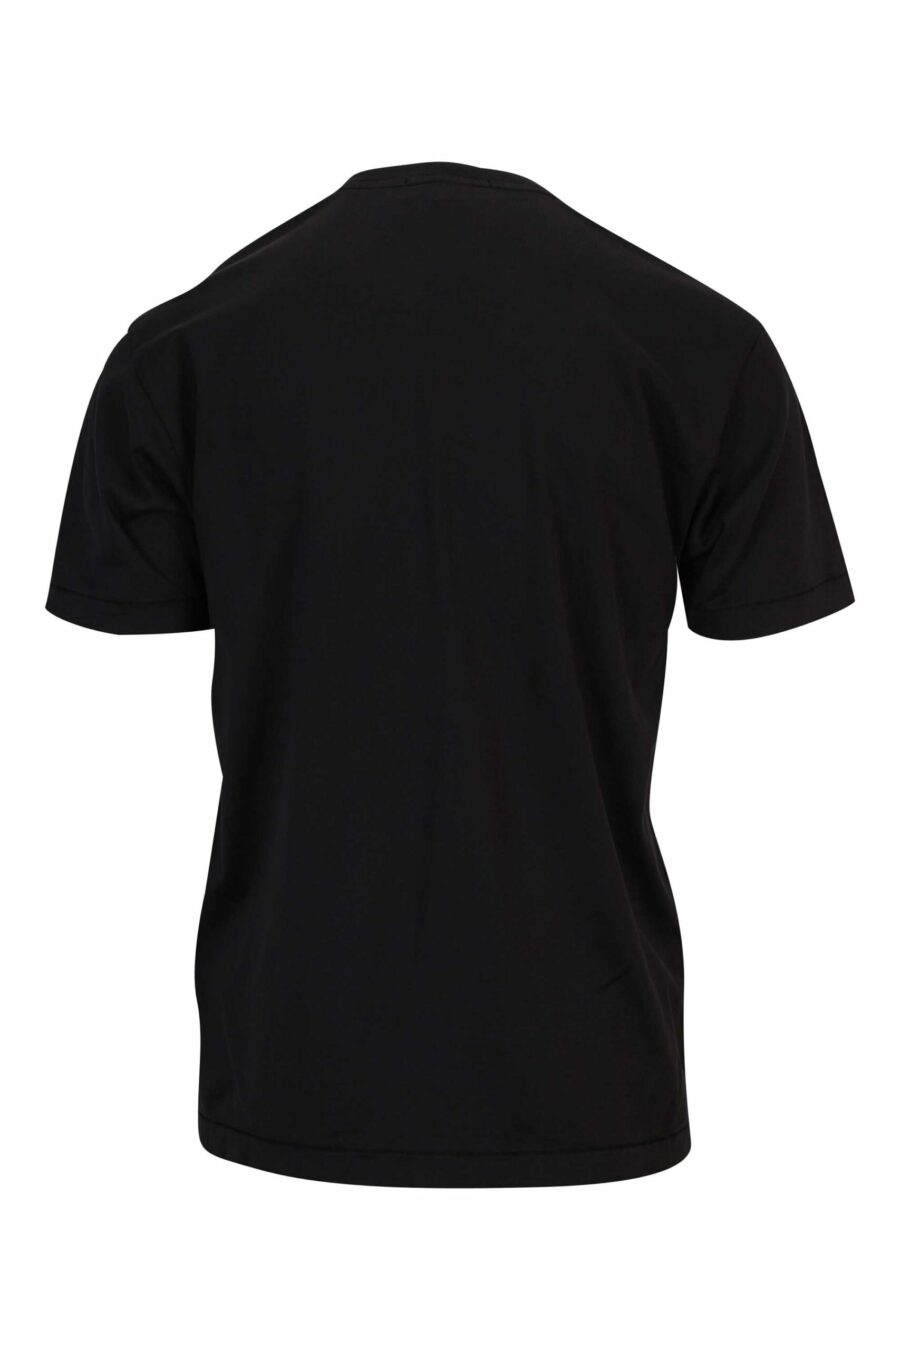 T-shirt noir avec mini logo compass patch - 8052572851964 1 scaled